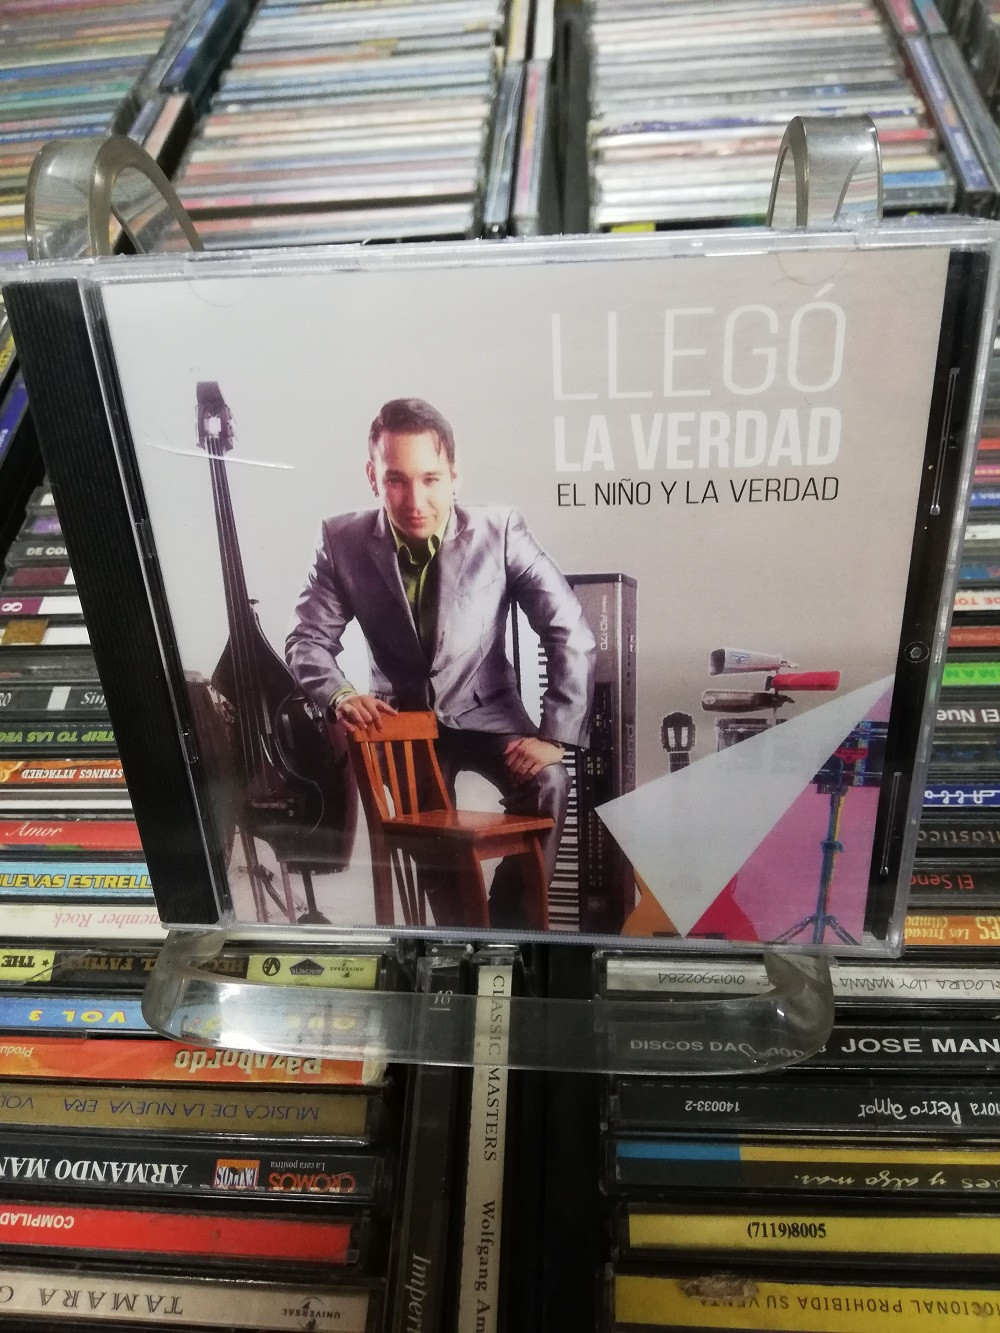 Imagen CD EL NIÑO Y LA VERDAD - LLEGO LA VERDAD